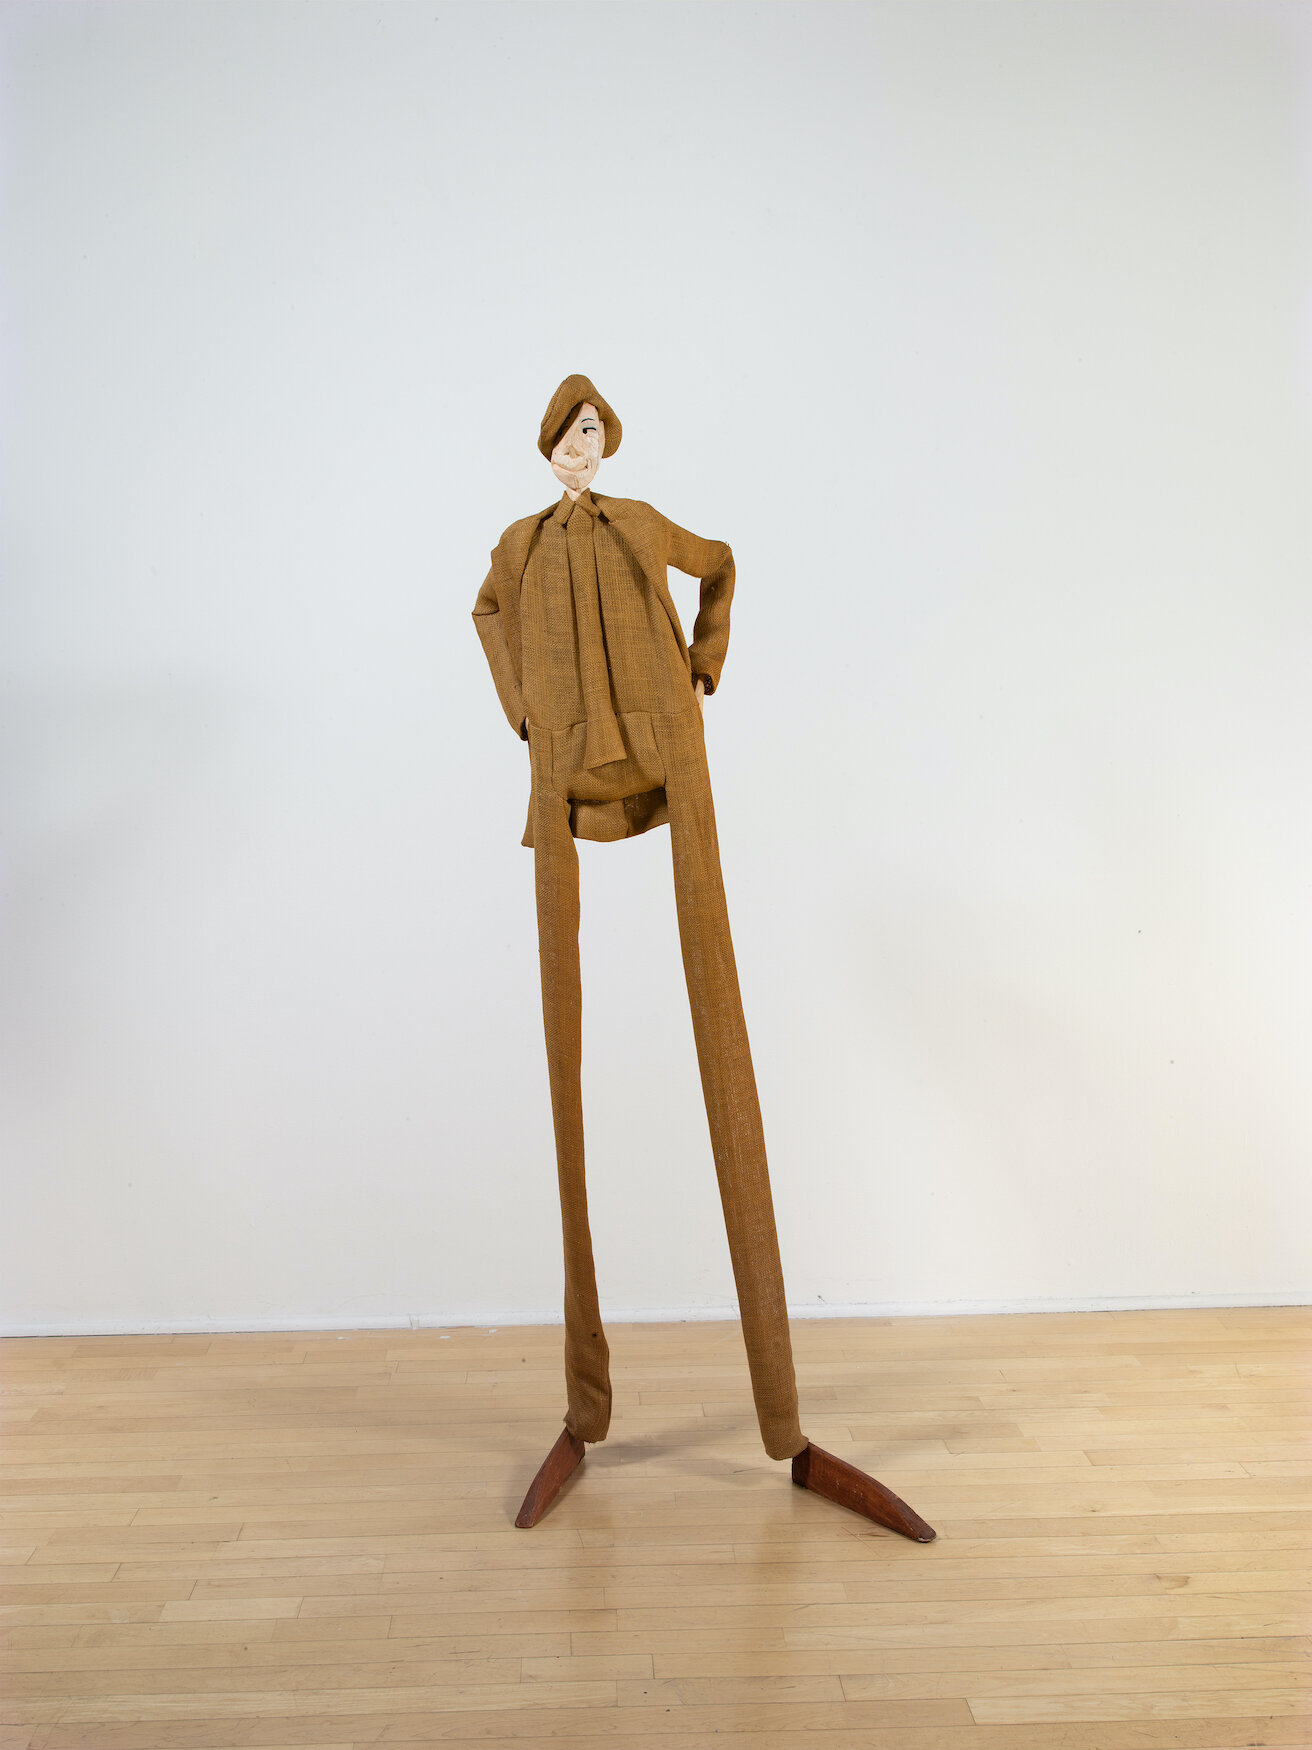  William King,  Irish Poet,  1997, Burlap, wood, aluminum armature, 76 x 28 x 14 inches 